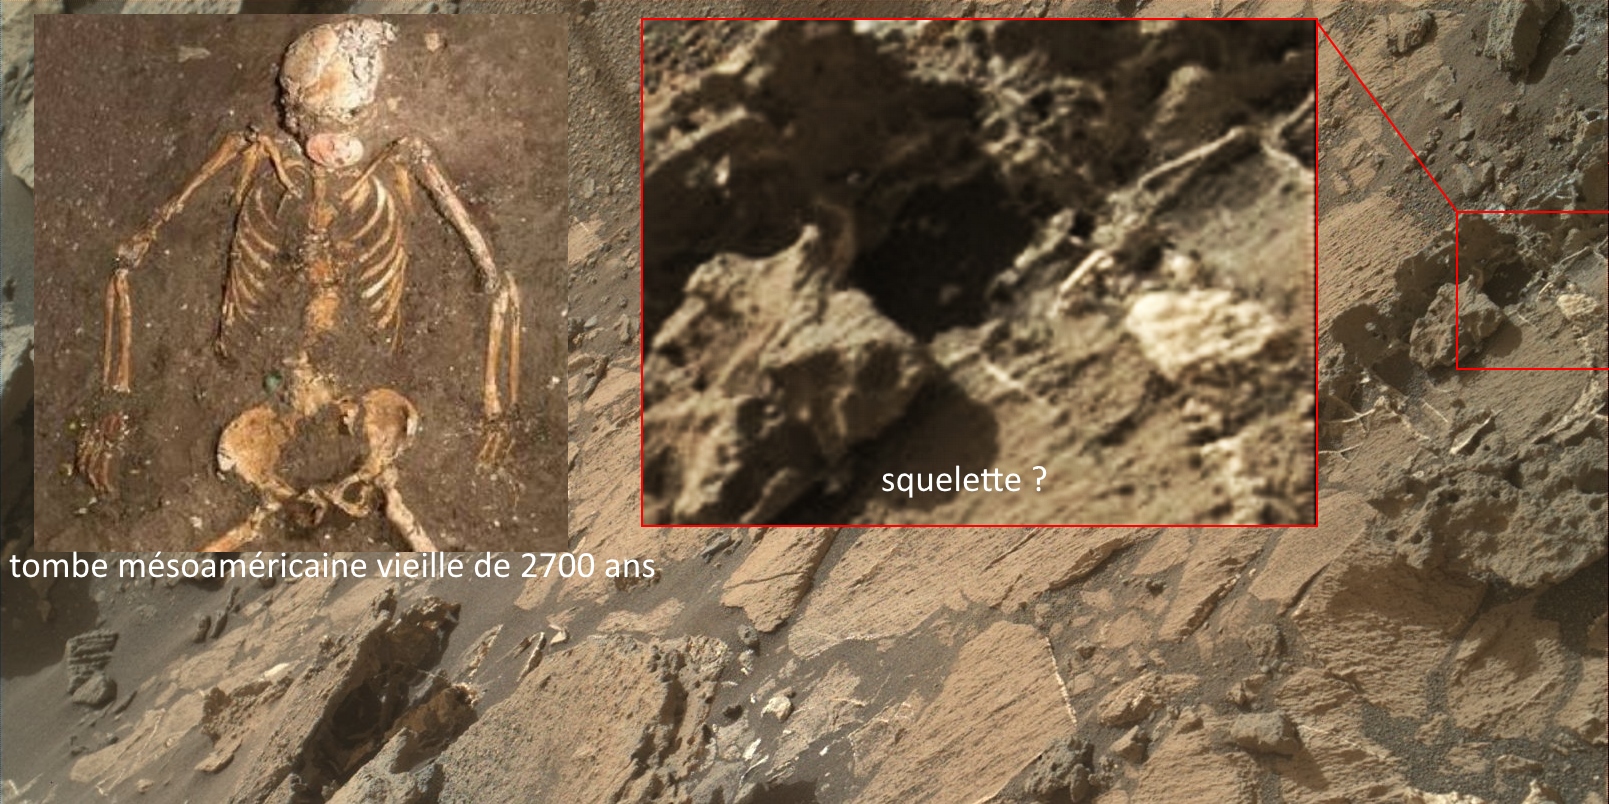 Squelette sur mars